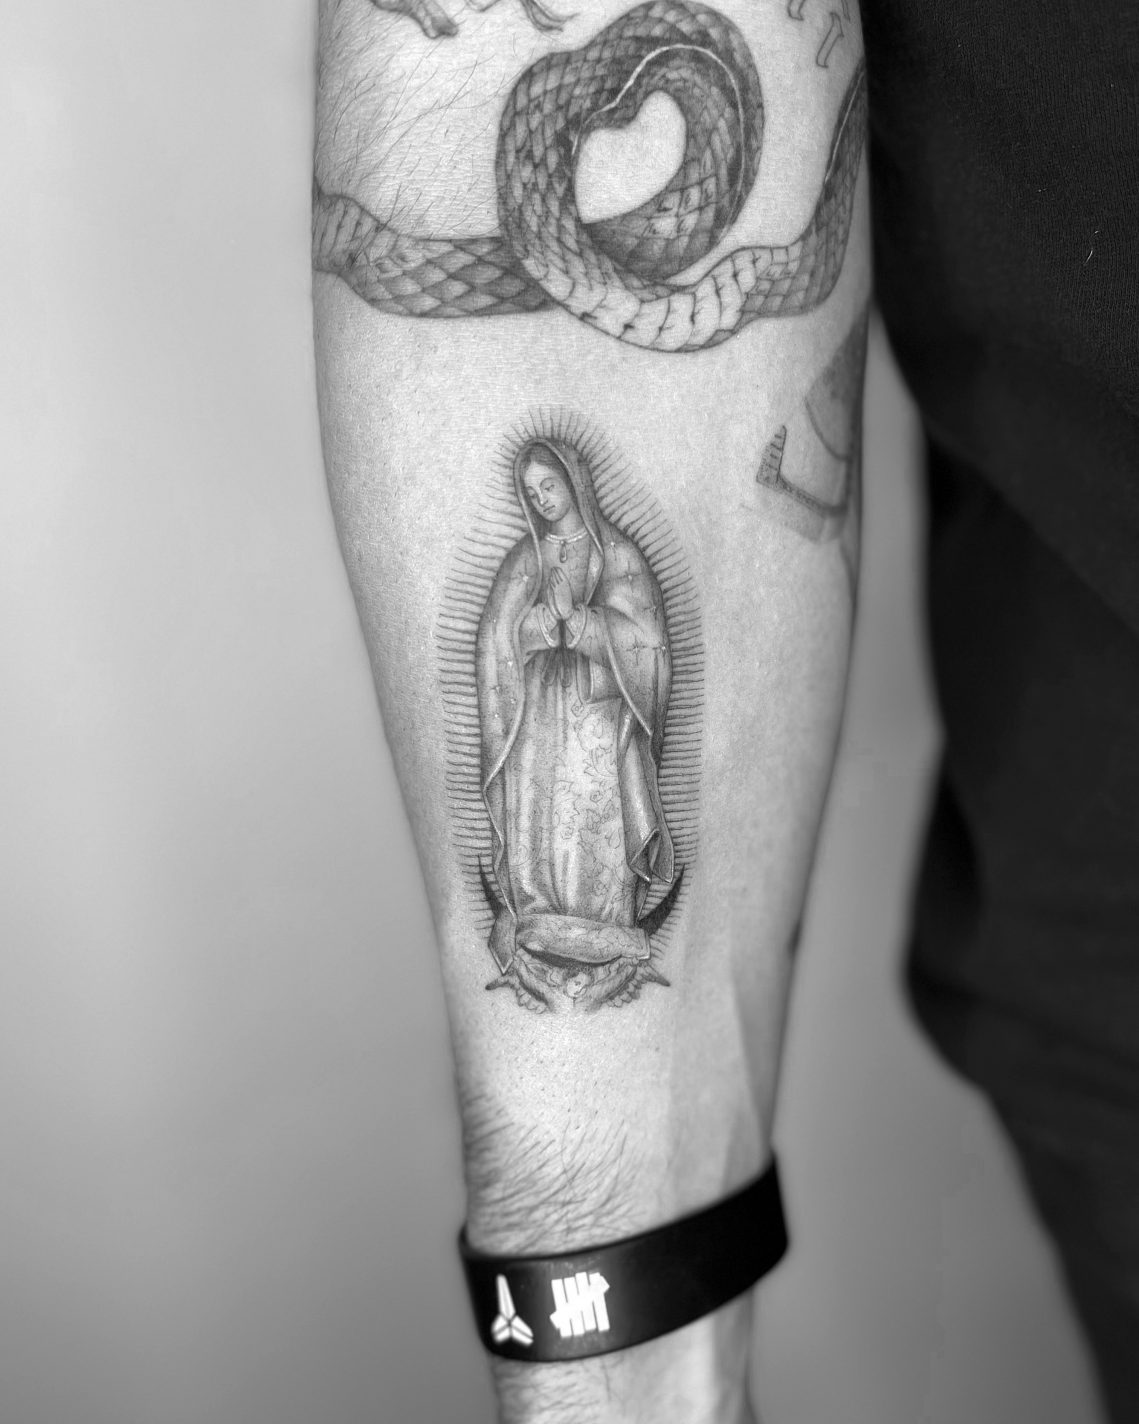 Virgin Mary Virgin Mary Temporary Tattoo / Mother of God Tattoo / Mary  Mother of Jesus Tattoo / Religious Tattoo / Mary of Nazareth Tattoo - Etsy  India